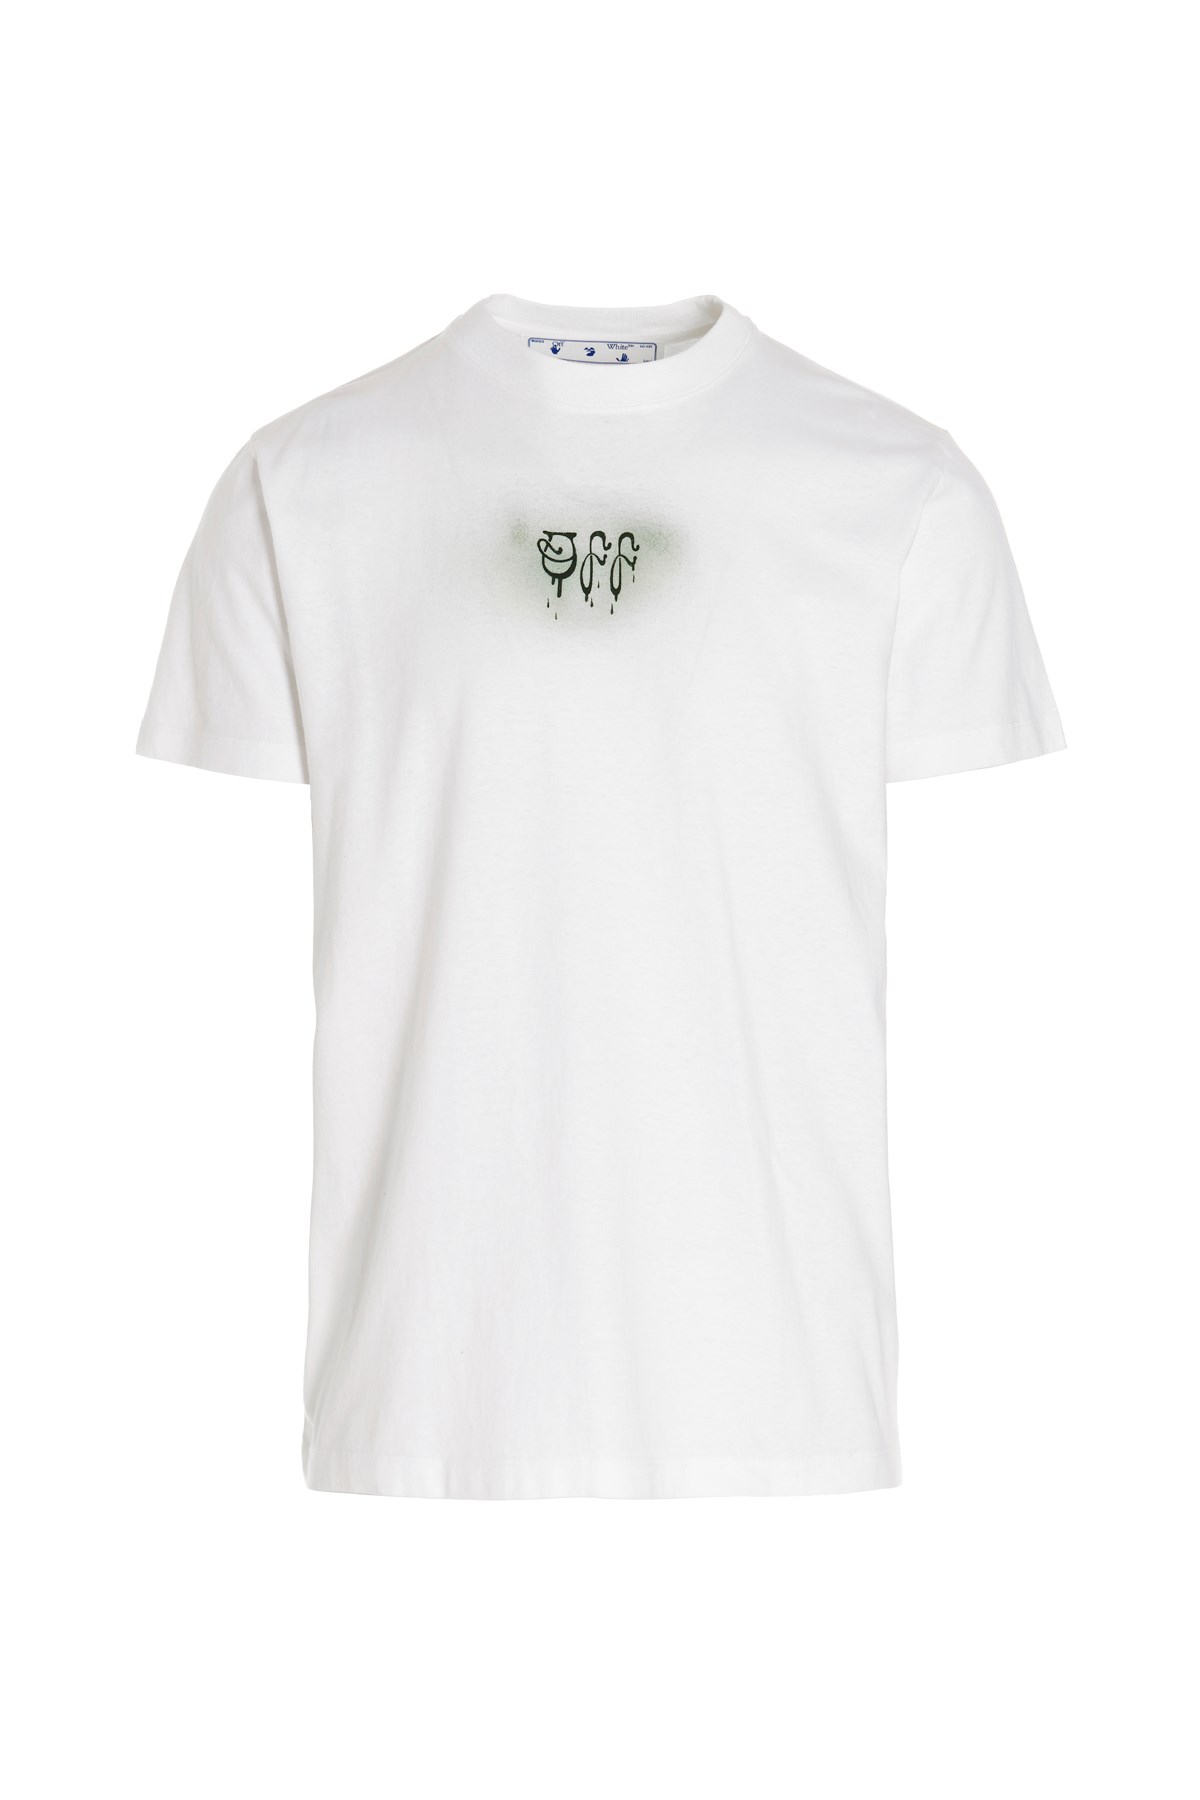 OFF-WHITE Off-White Kapsel Baby Brush ‒ T-Shirt